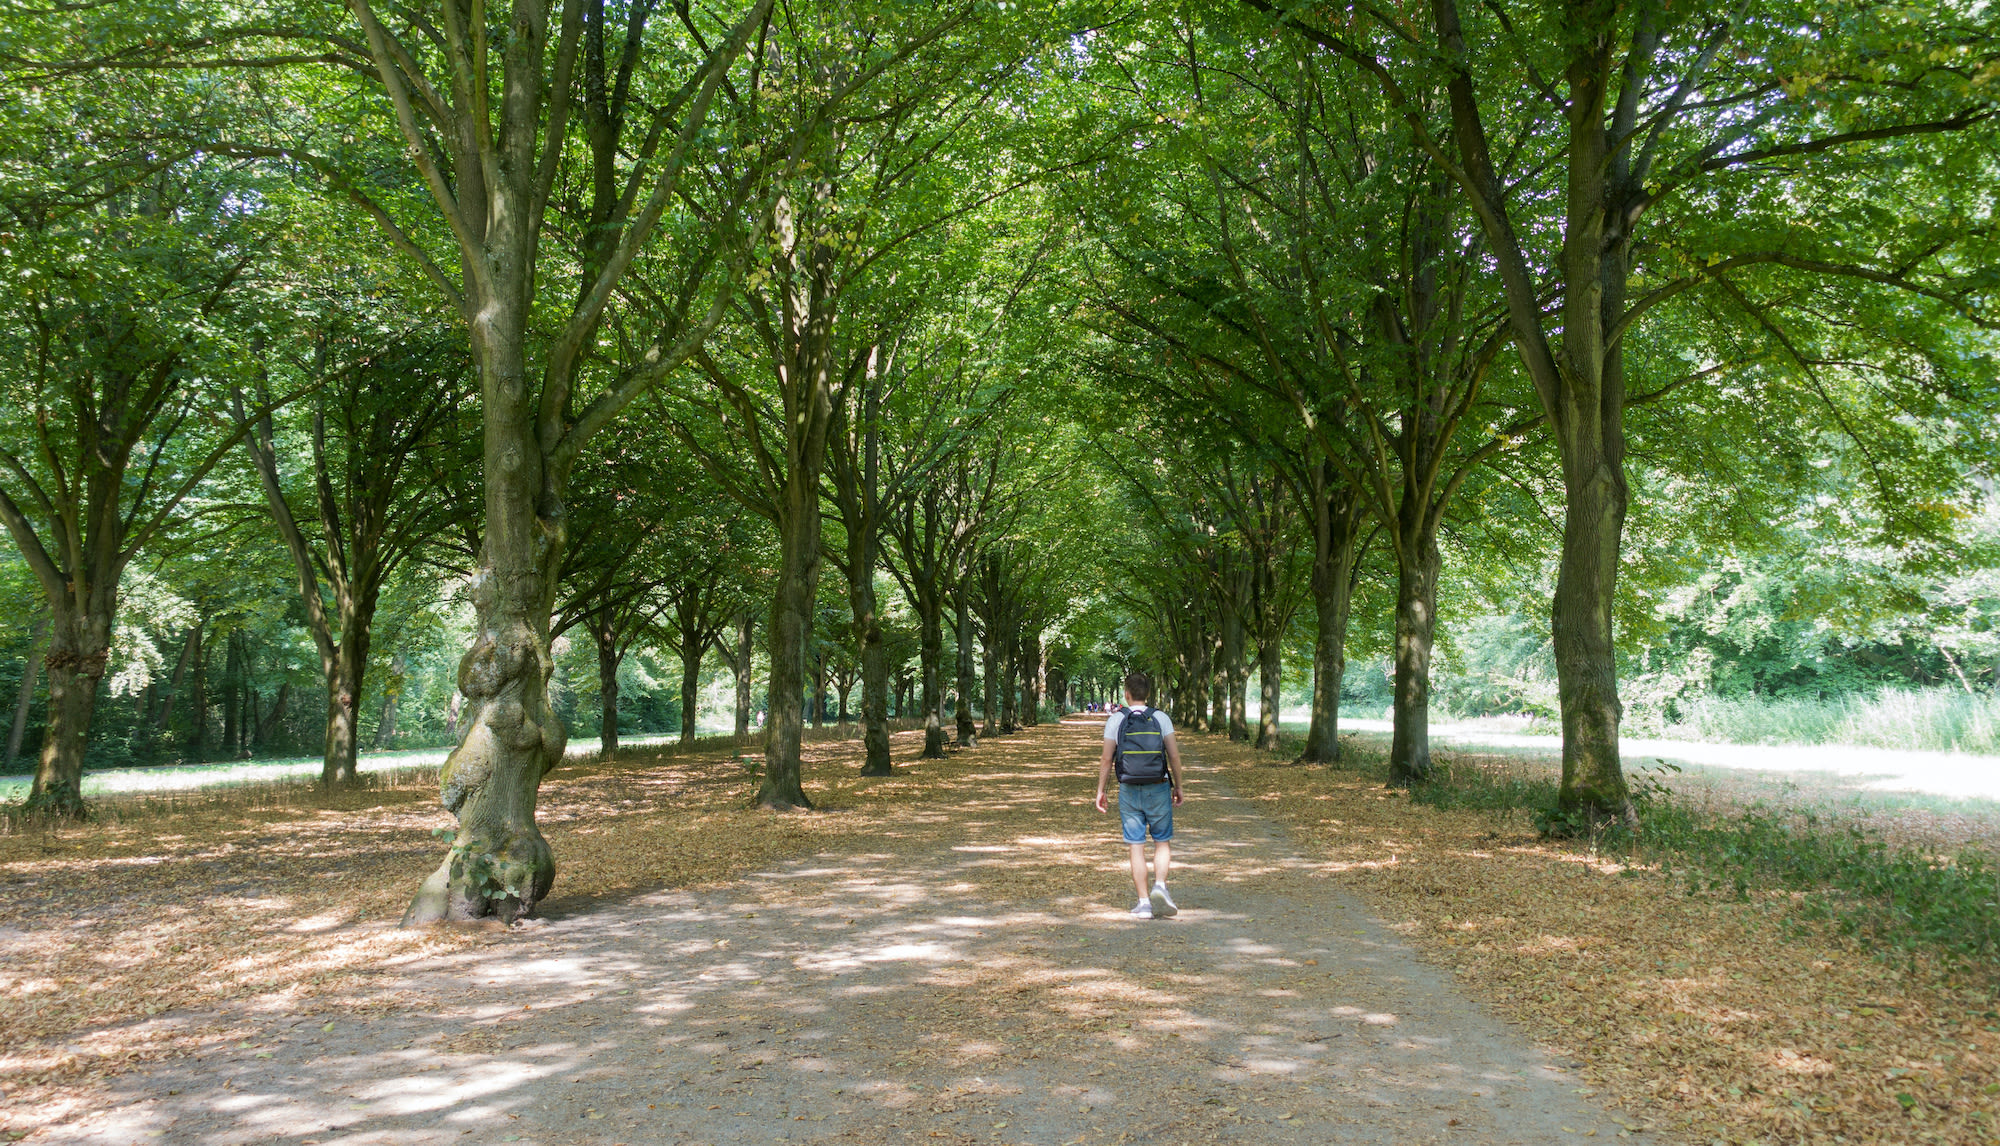 Wandelen in park met veel schaduw door bomen in Amsterdam. Foto: Adobe Stock / oksanahappy